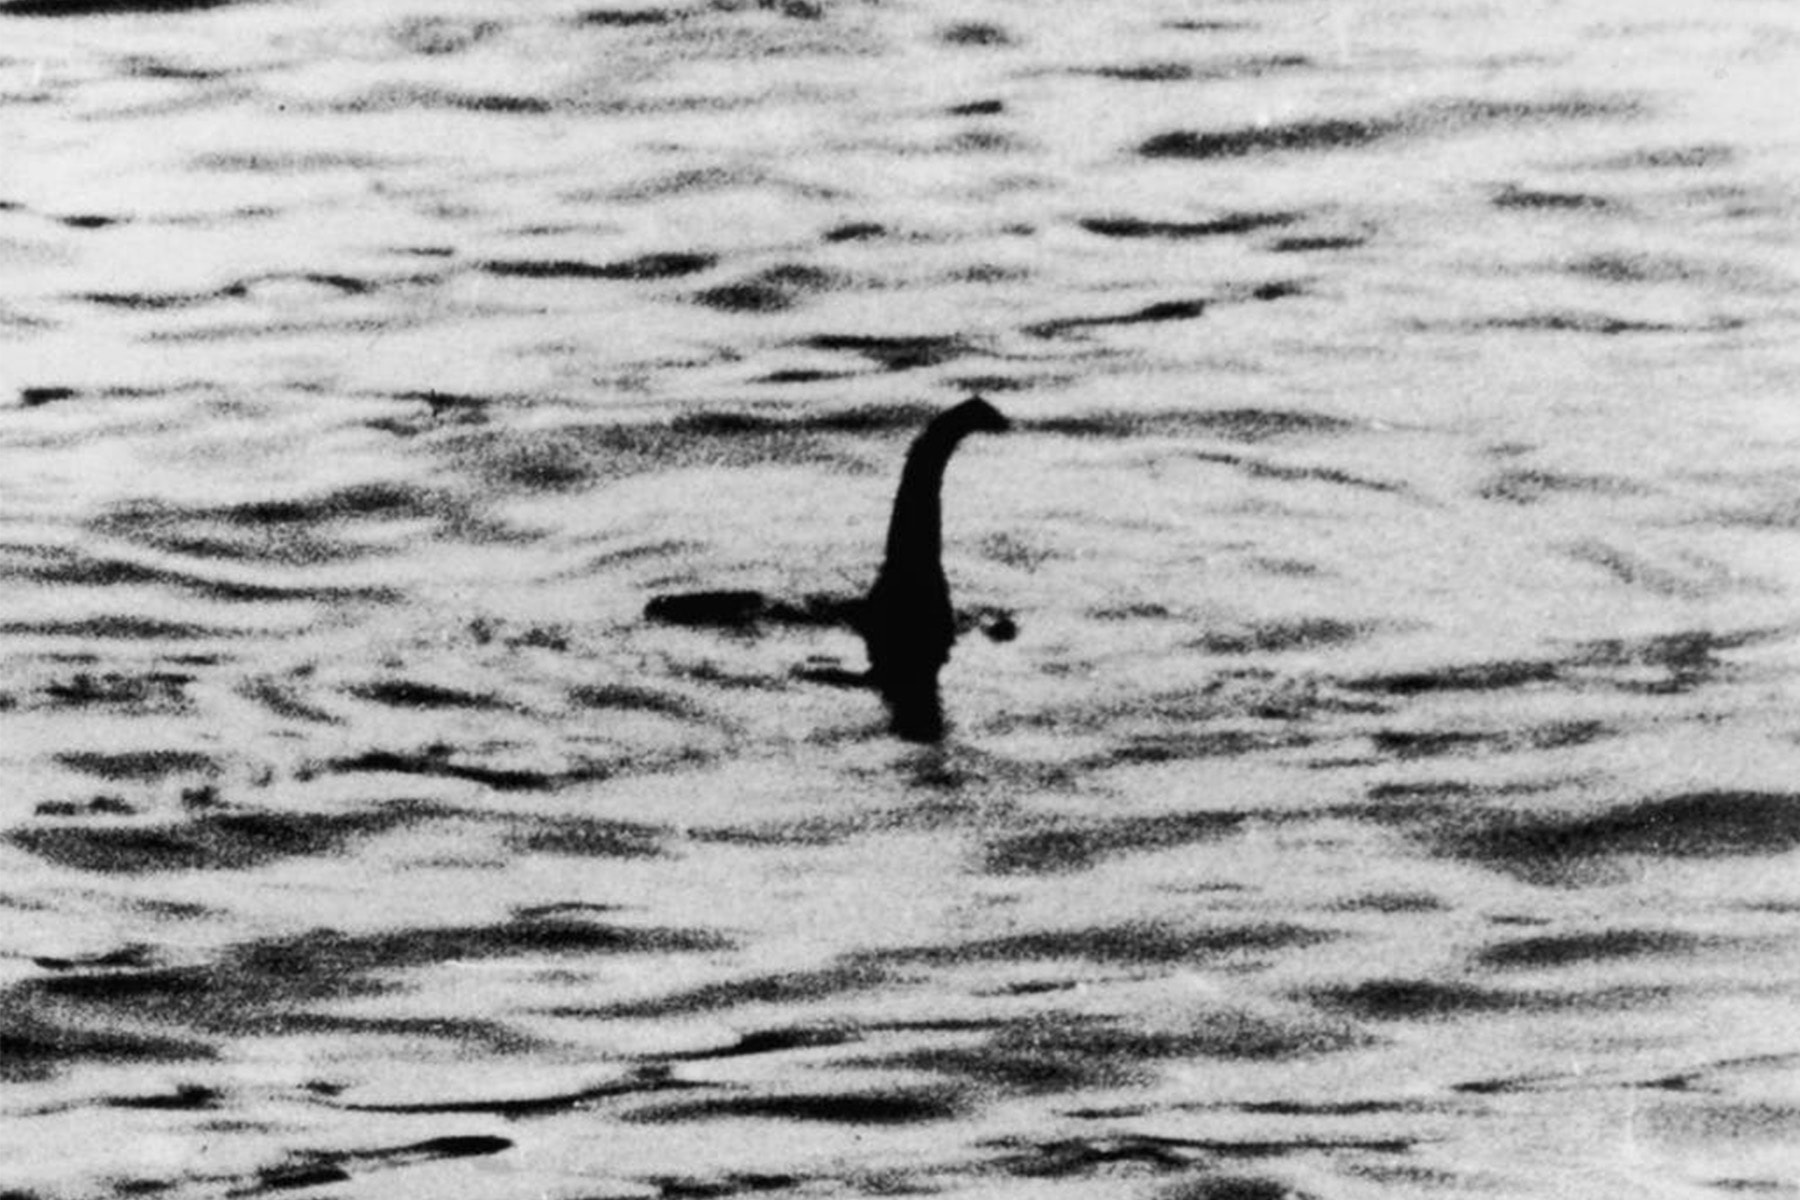 英國巴斯大學最新考古報告間接證實神秘生物「尼斯湖水怪」存在